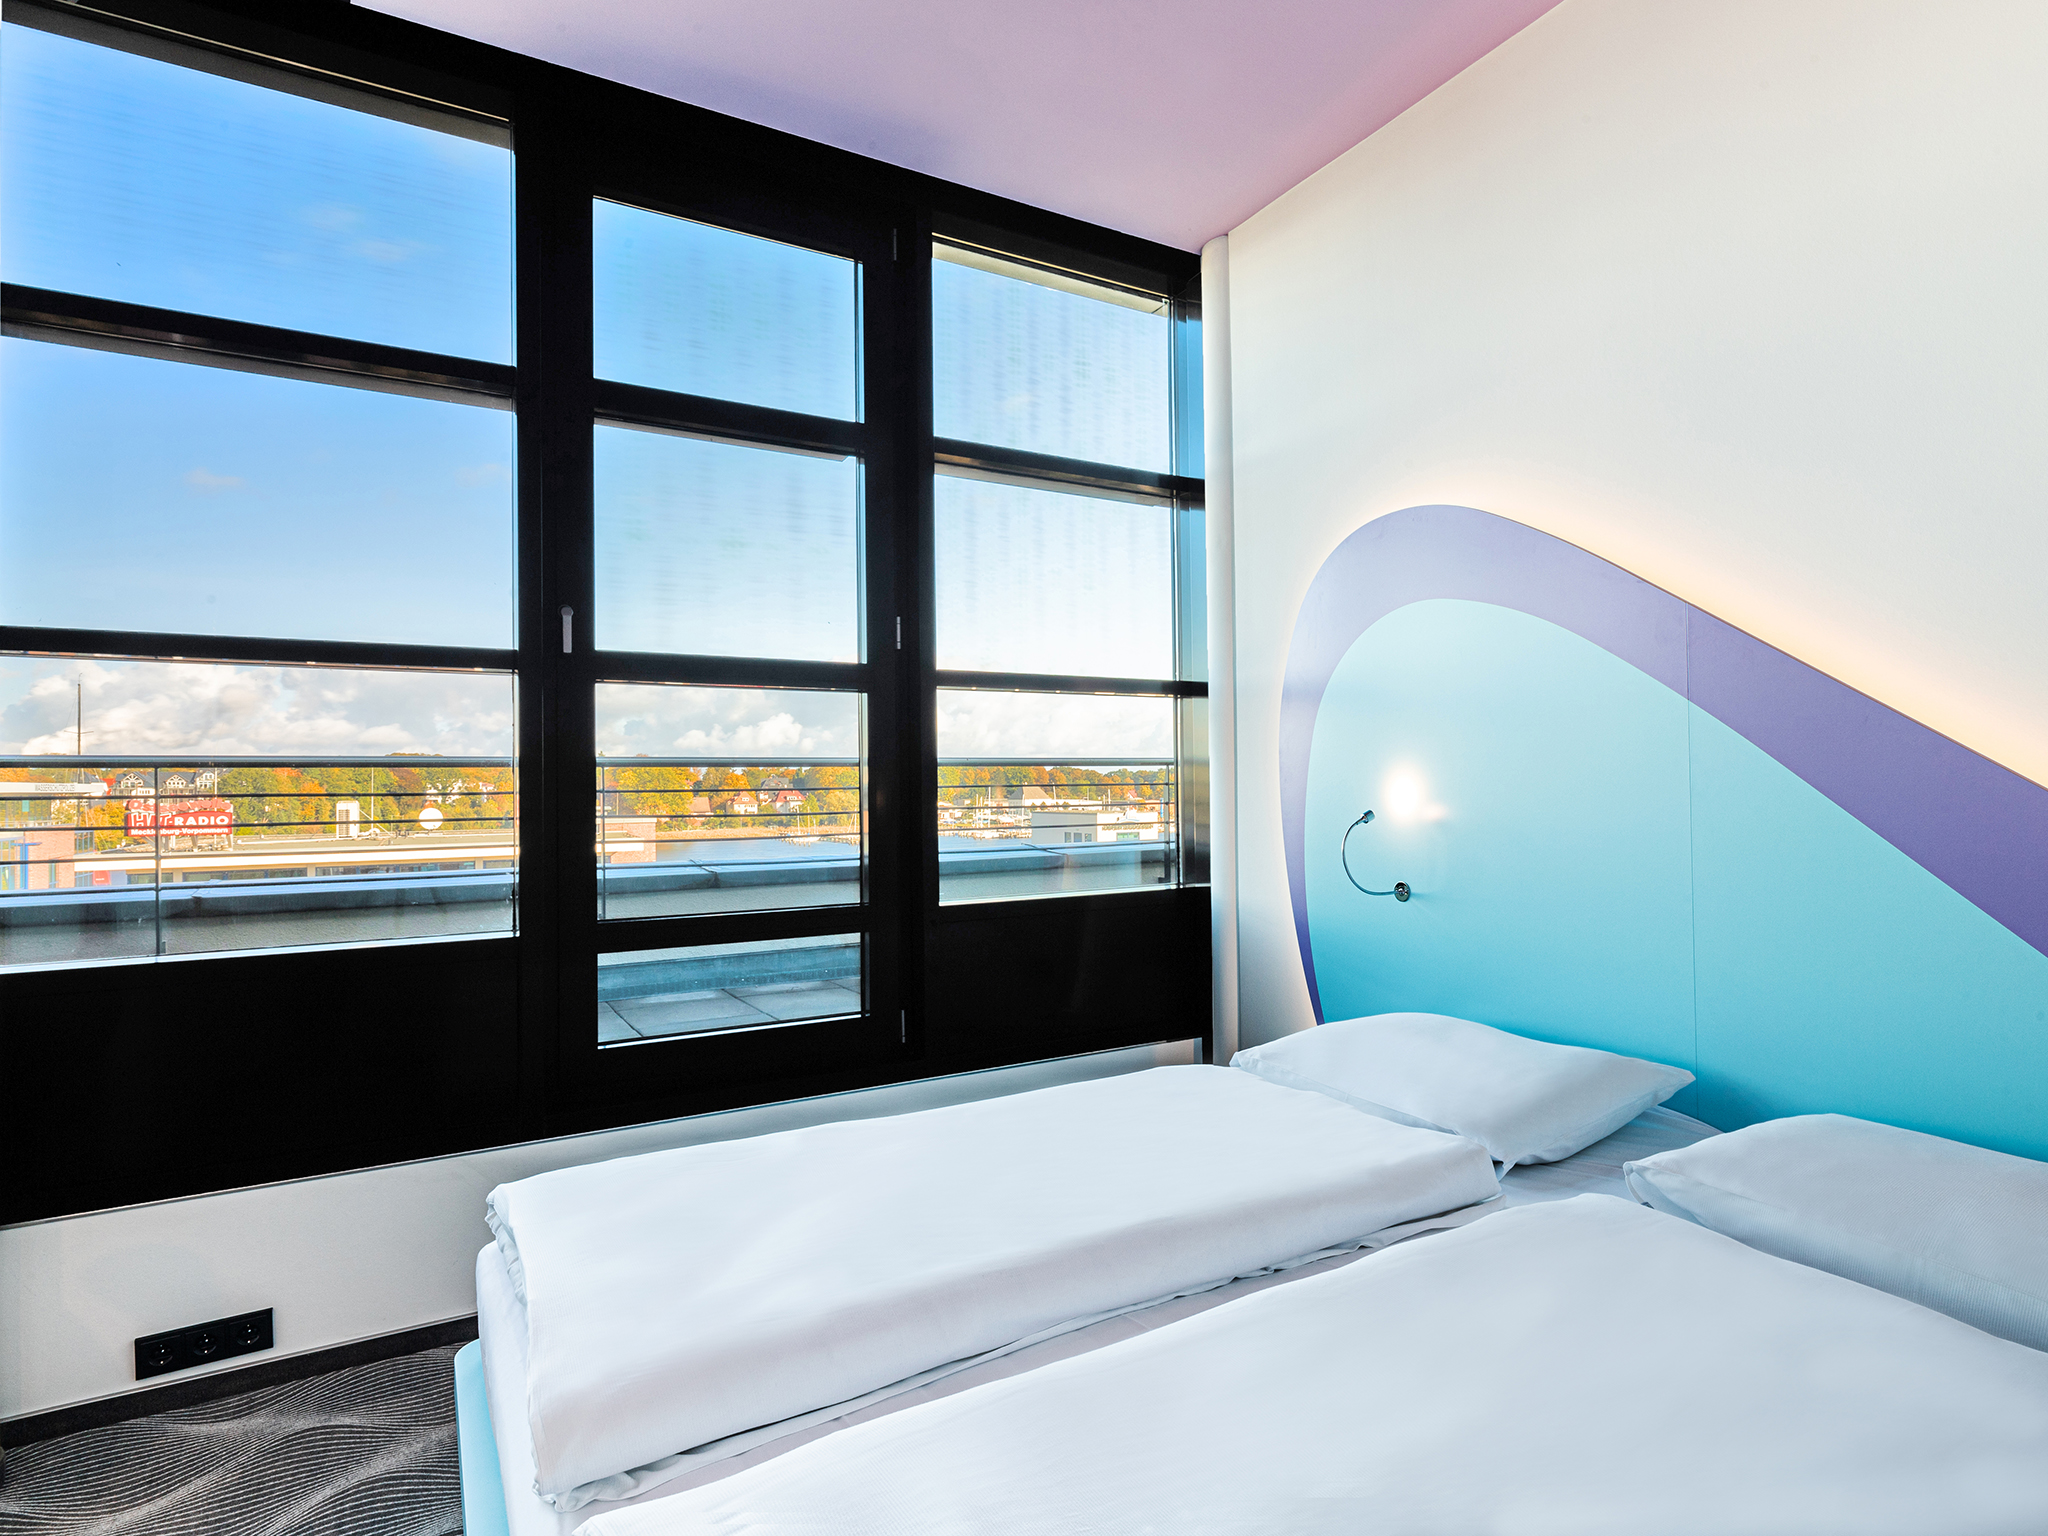 Doppelbett im lichtdurchfluteten Hotelzimmer mit Blick auf die Stadt